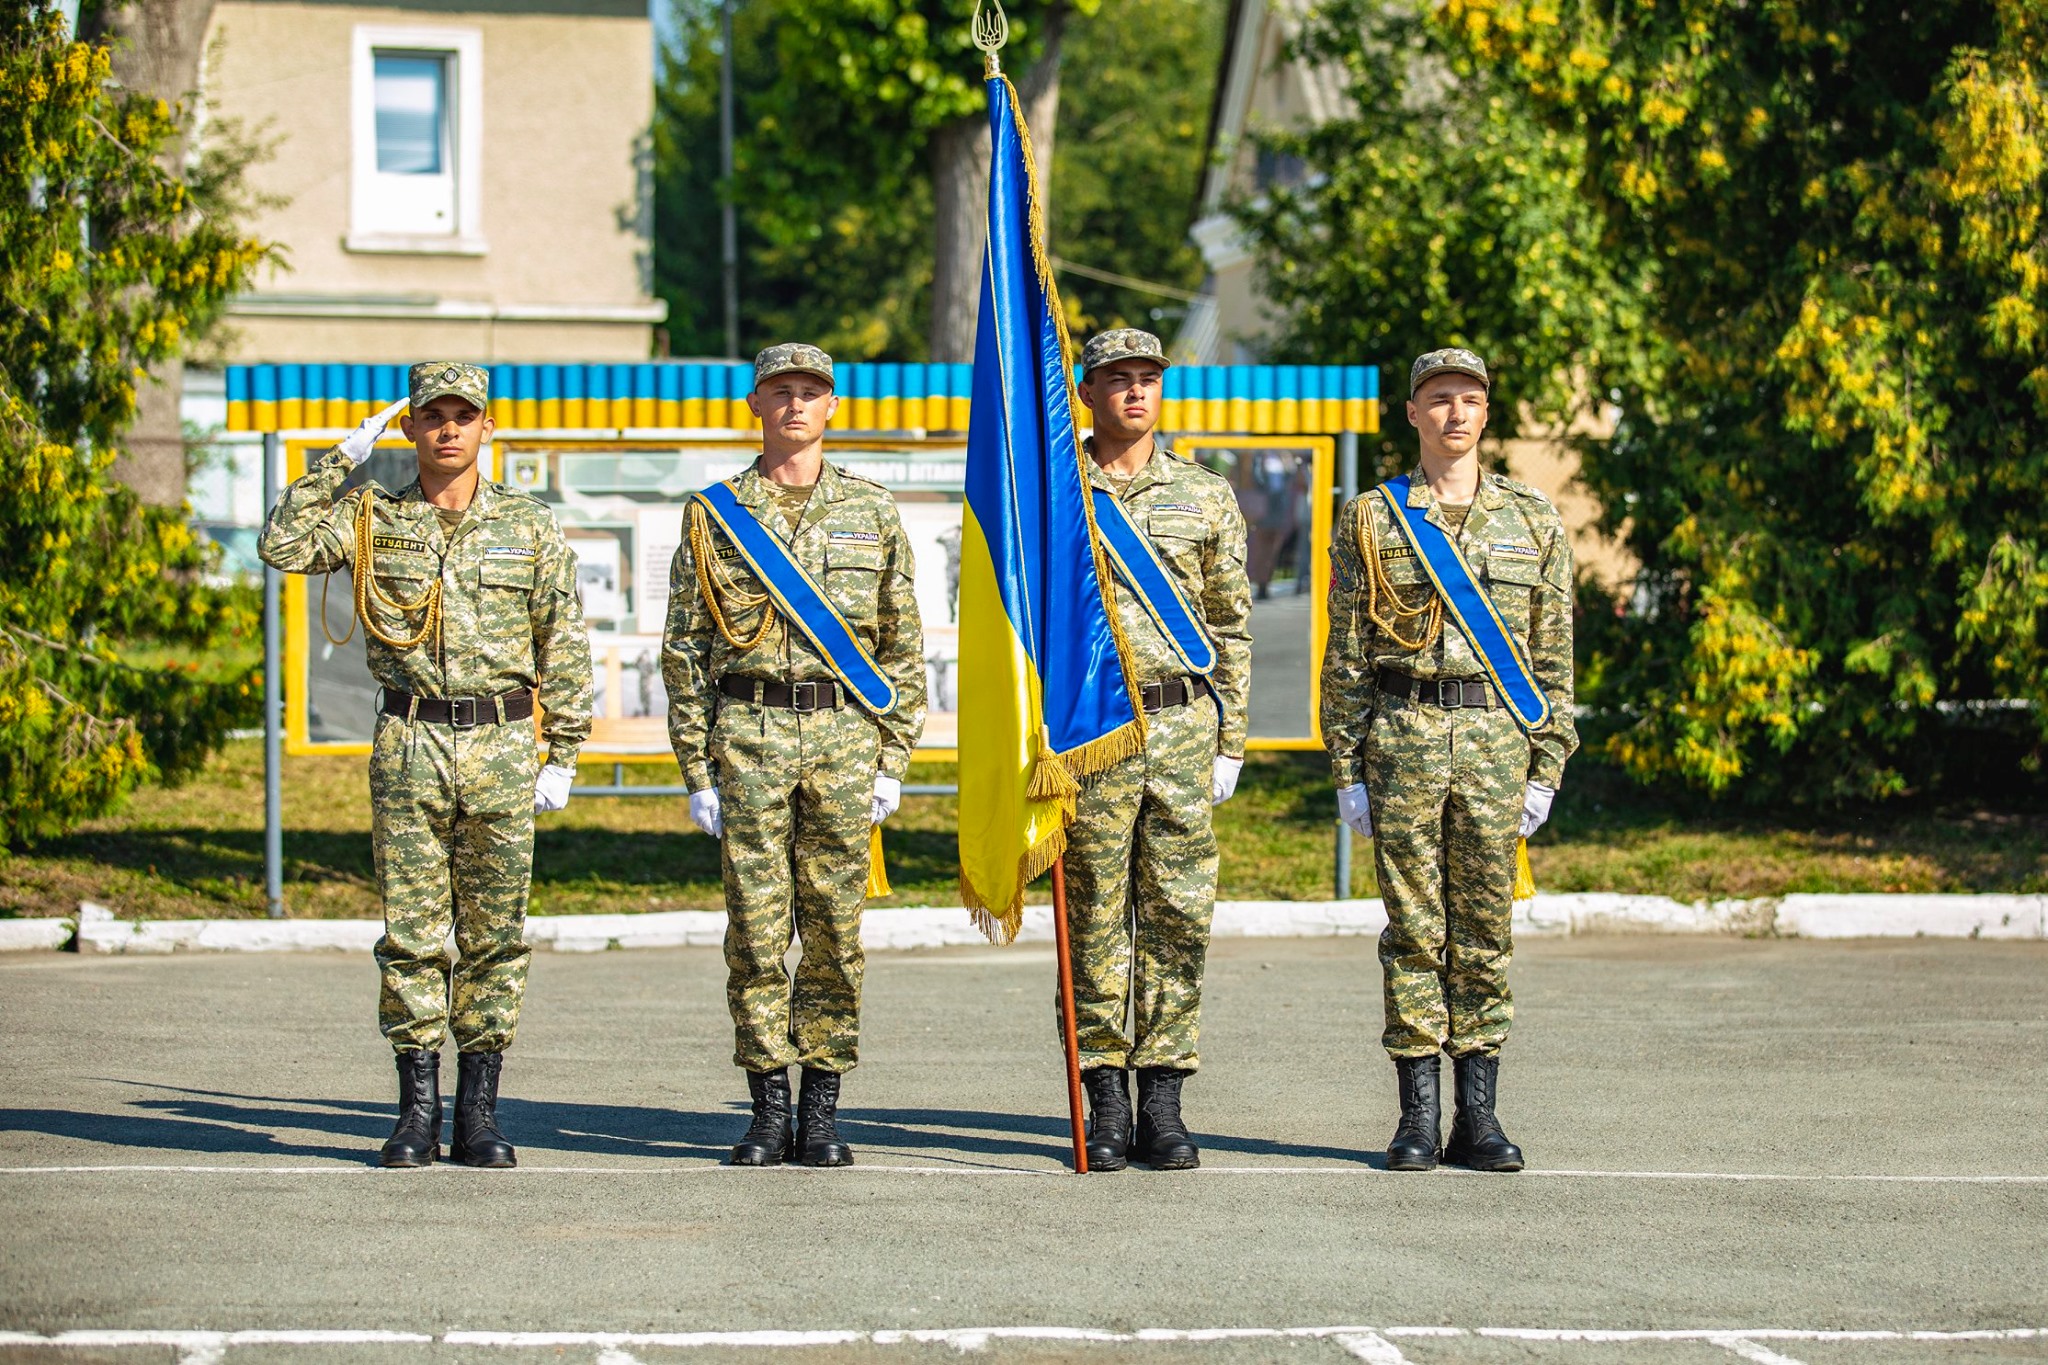 Щиро вітаю усіх зі святом Покрови Пресвятої Богородиці та Днем захисника України!